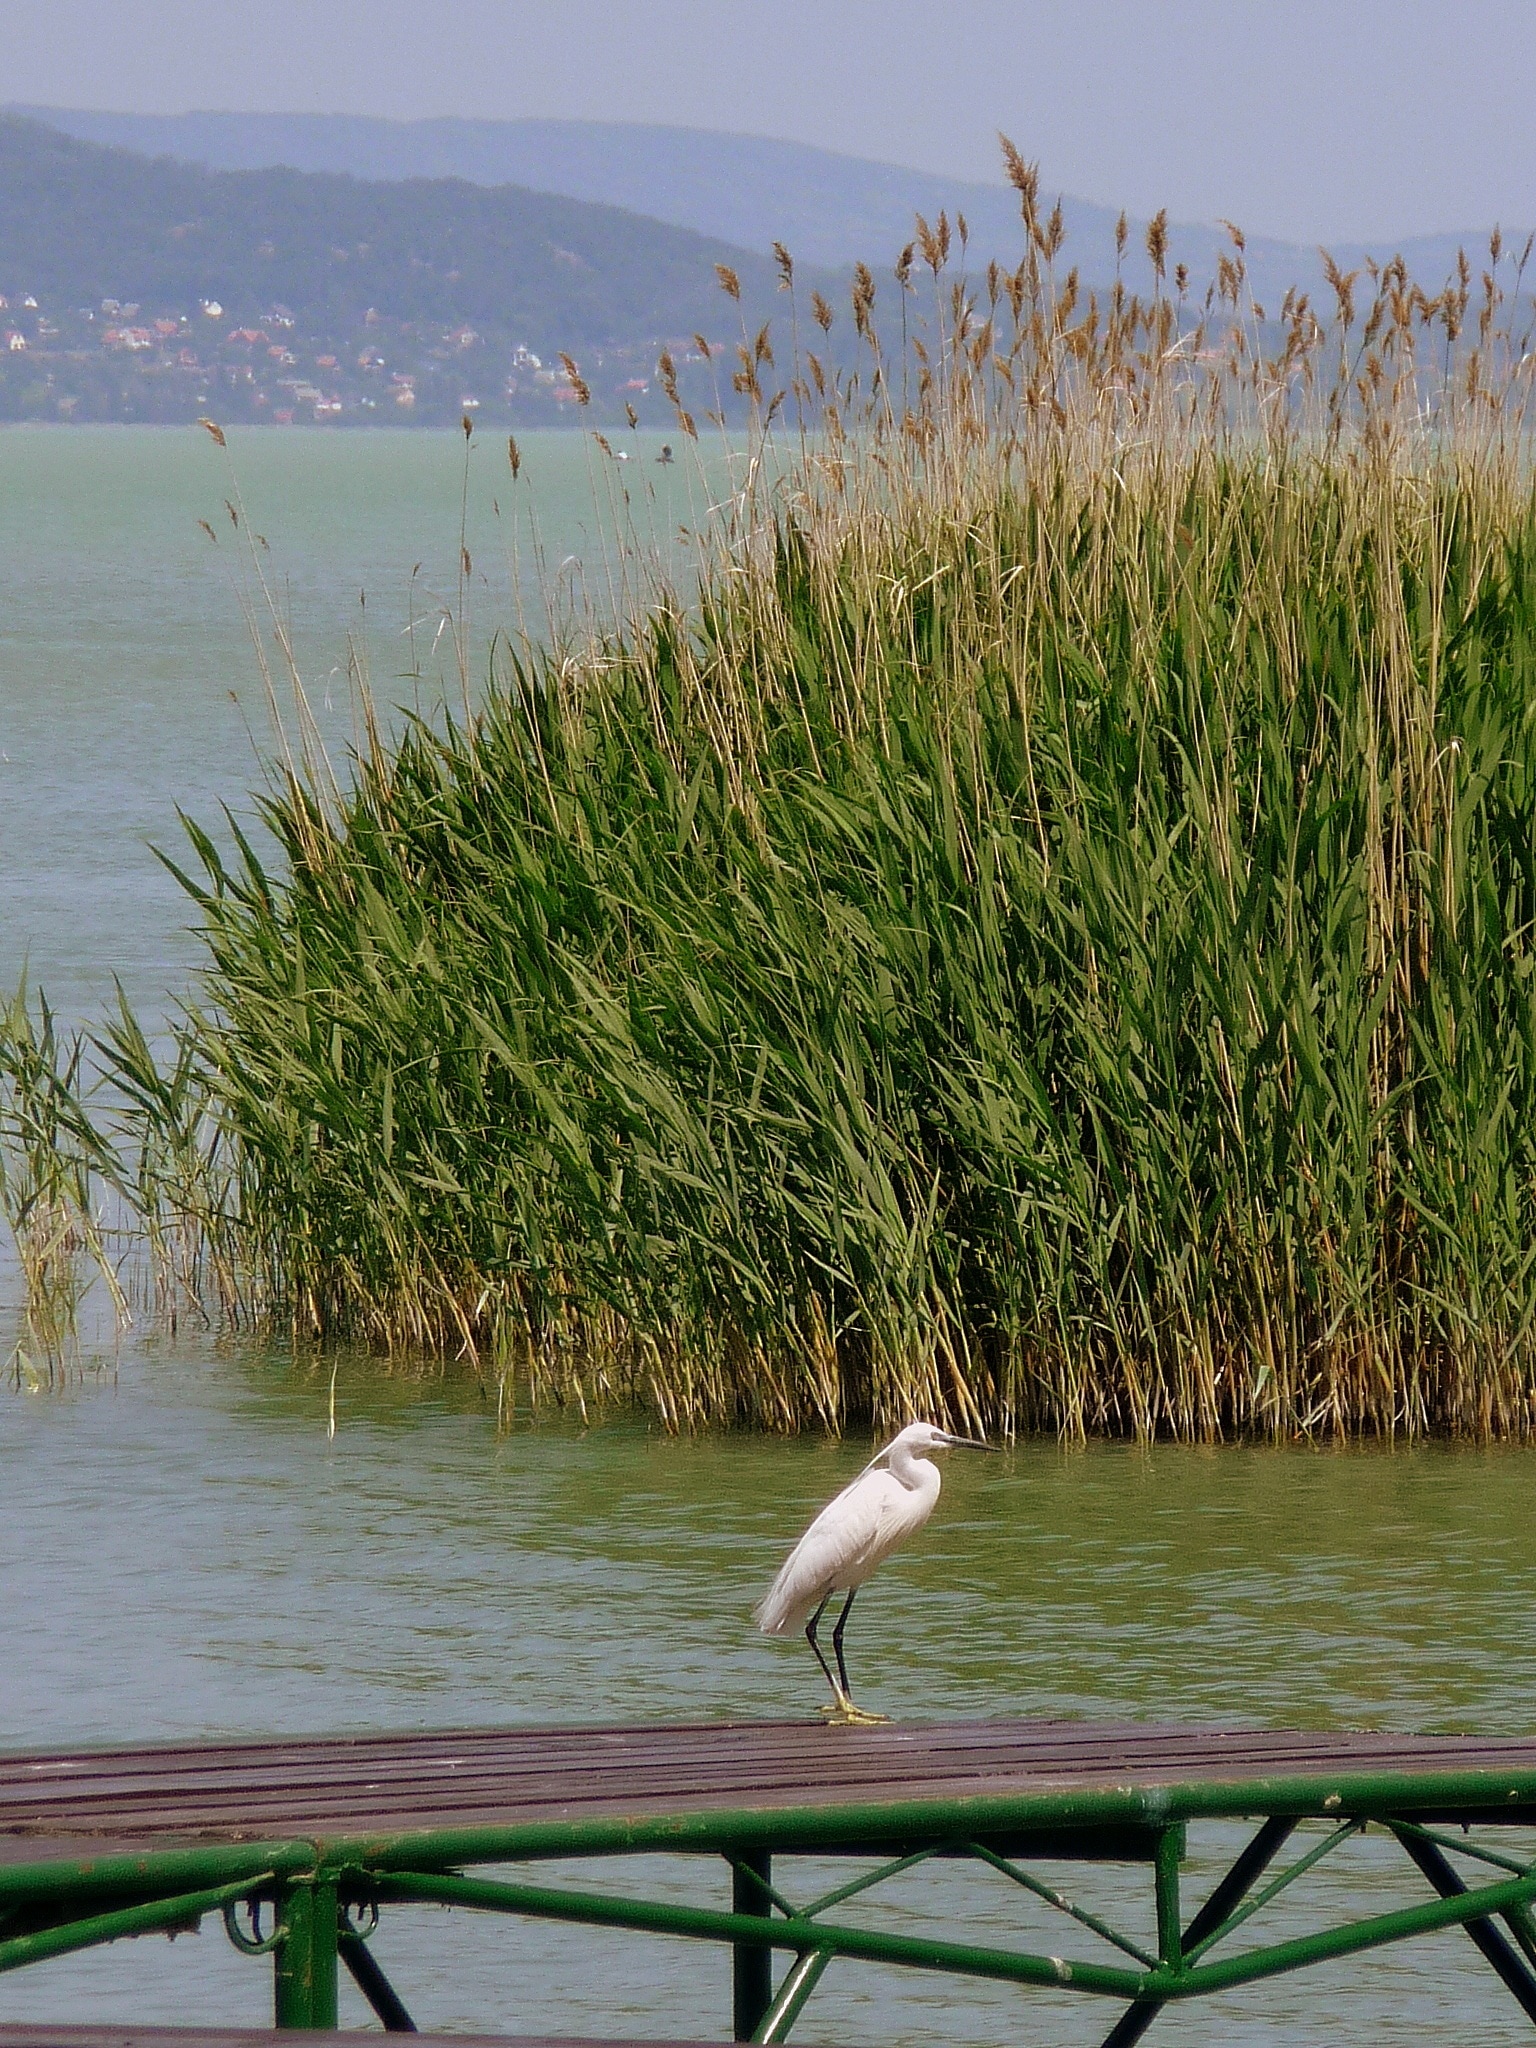 white stork on dock near body of water